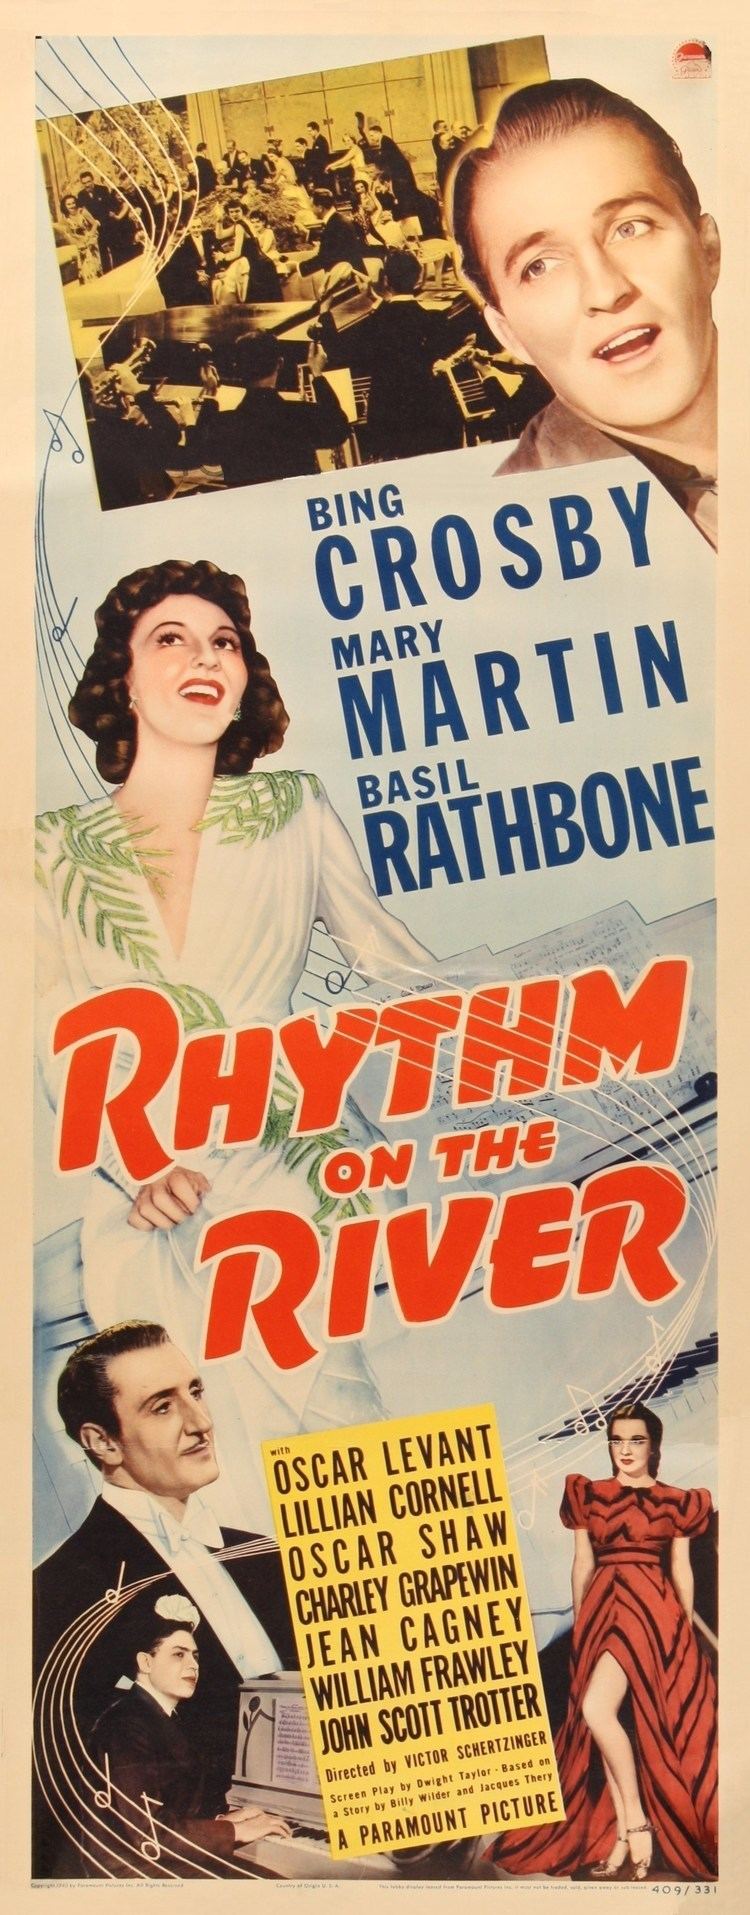 Rhythm on the River wwwbasilrathbonenetfilmsrhythmonriverror216jpg